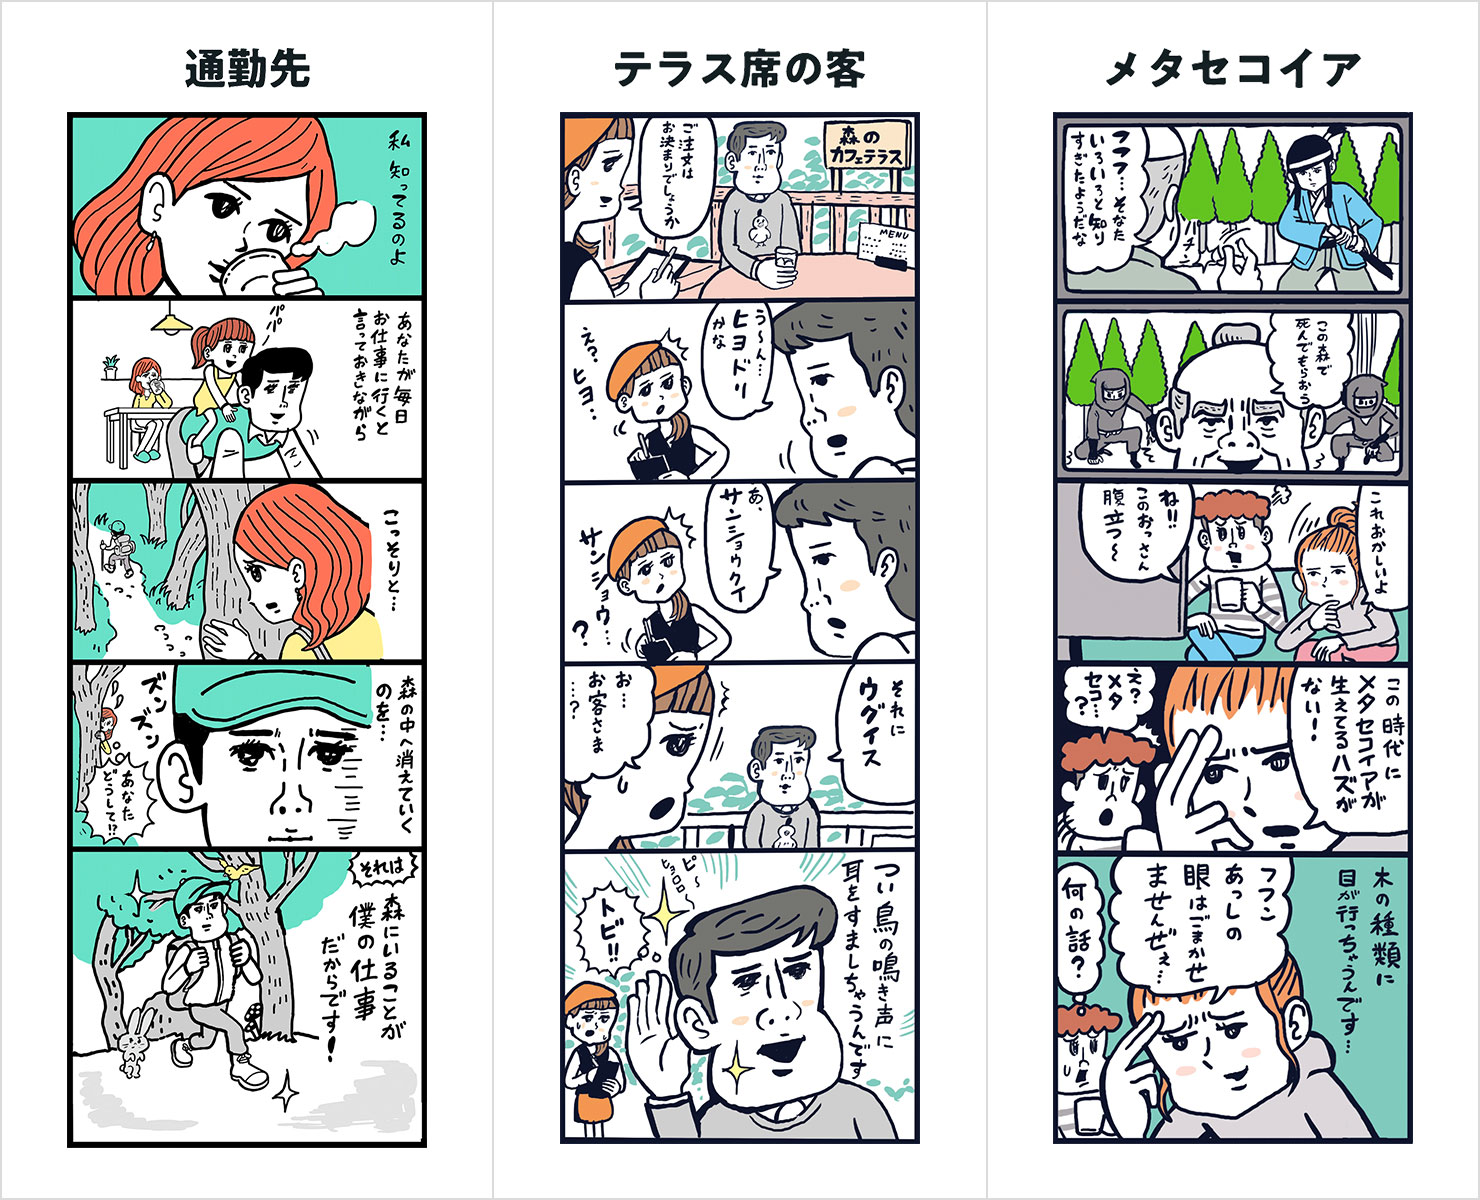 3つの漫画コンテンツイメージ。漫画のタイトルは、左から「連絡先」、「テラスの席の客」、「メタセコイア」。